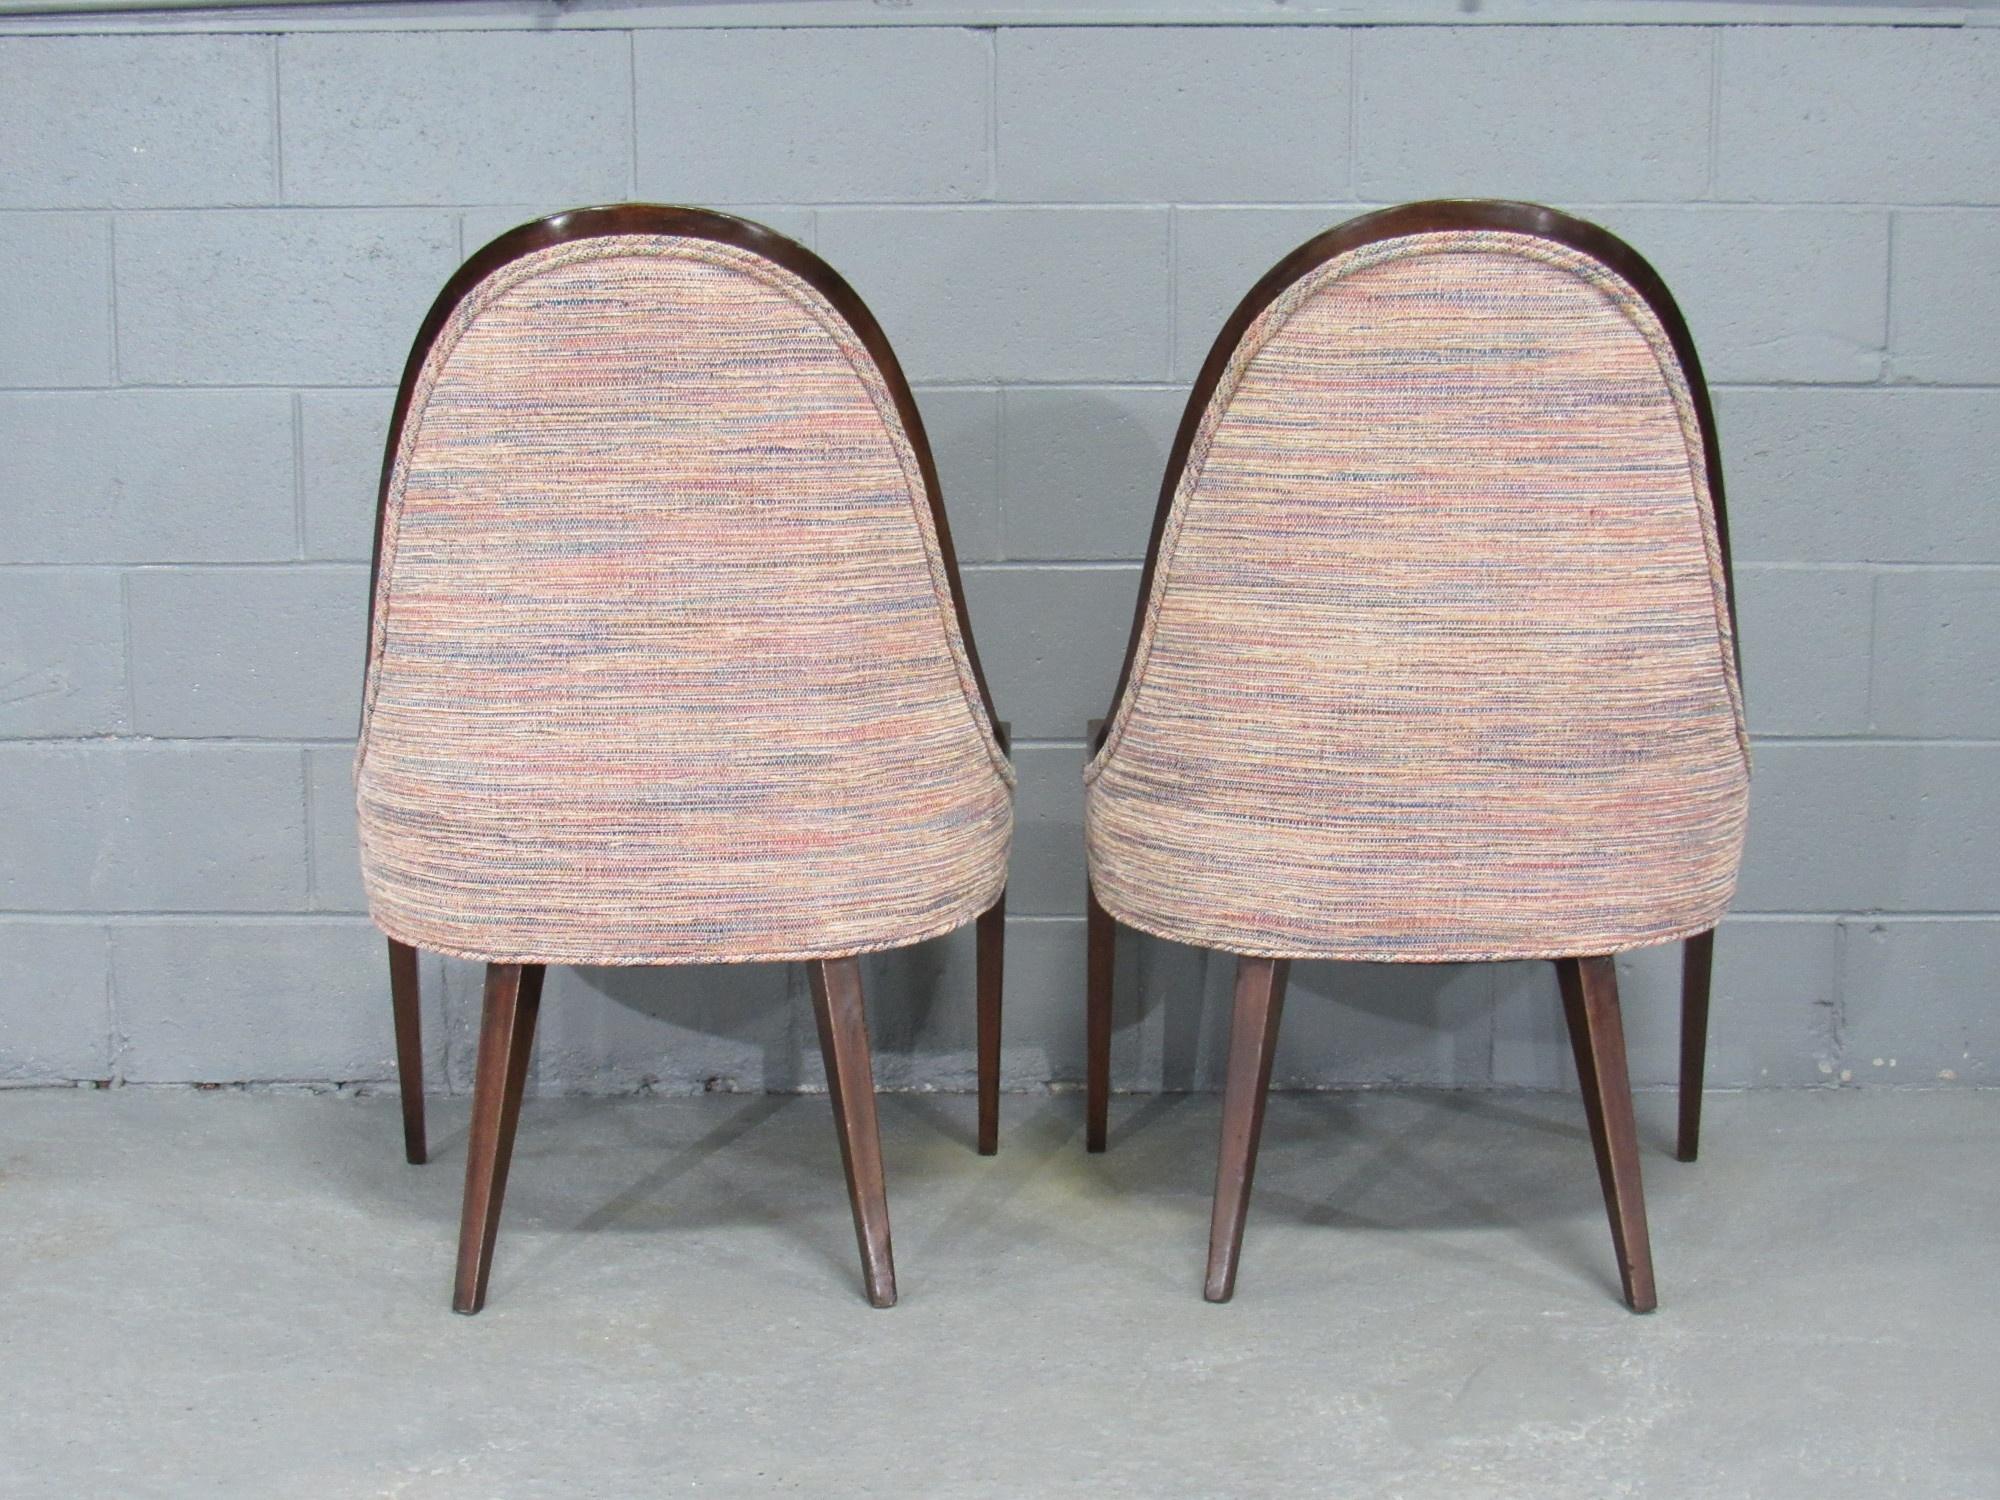 Ein Paar Gondel-Slipper-Stühle aus der Jahrhundertmitte der 1950er Jahre mit anmutigem Mahagonirahmen und gespreizten Hinterbeinen, entworfen von Harvey Probber, Amerikaner. Die Stühle haben einen stabilen Mahagoni-Rahmen und sind mit hochwertigem